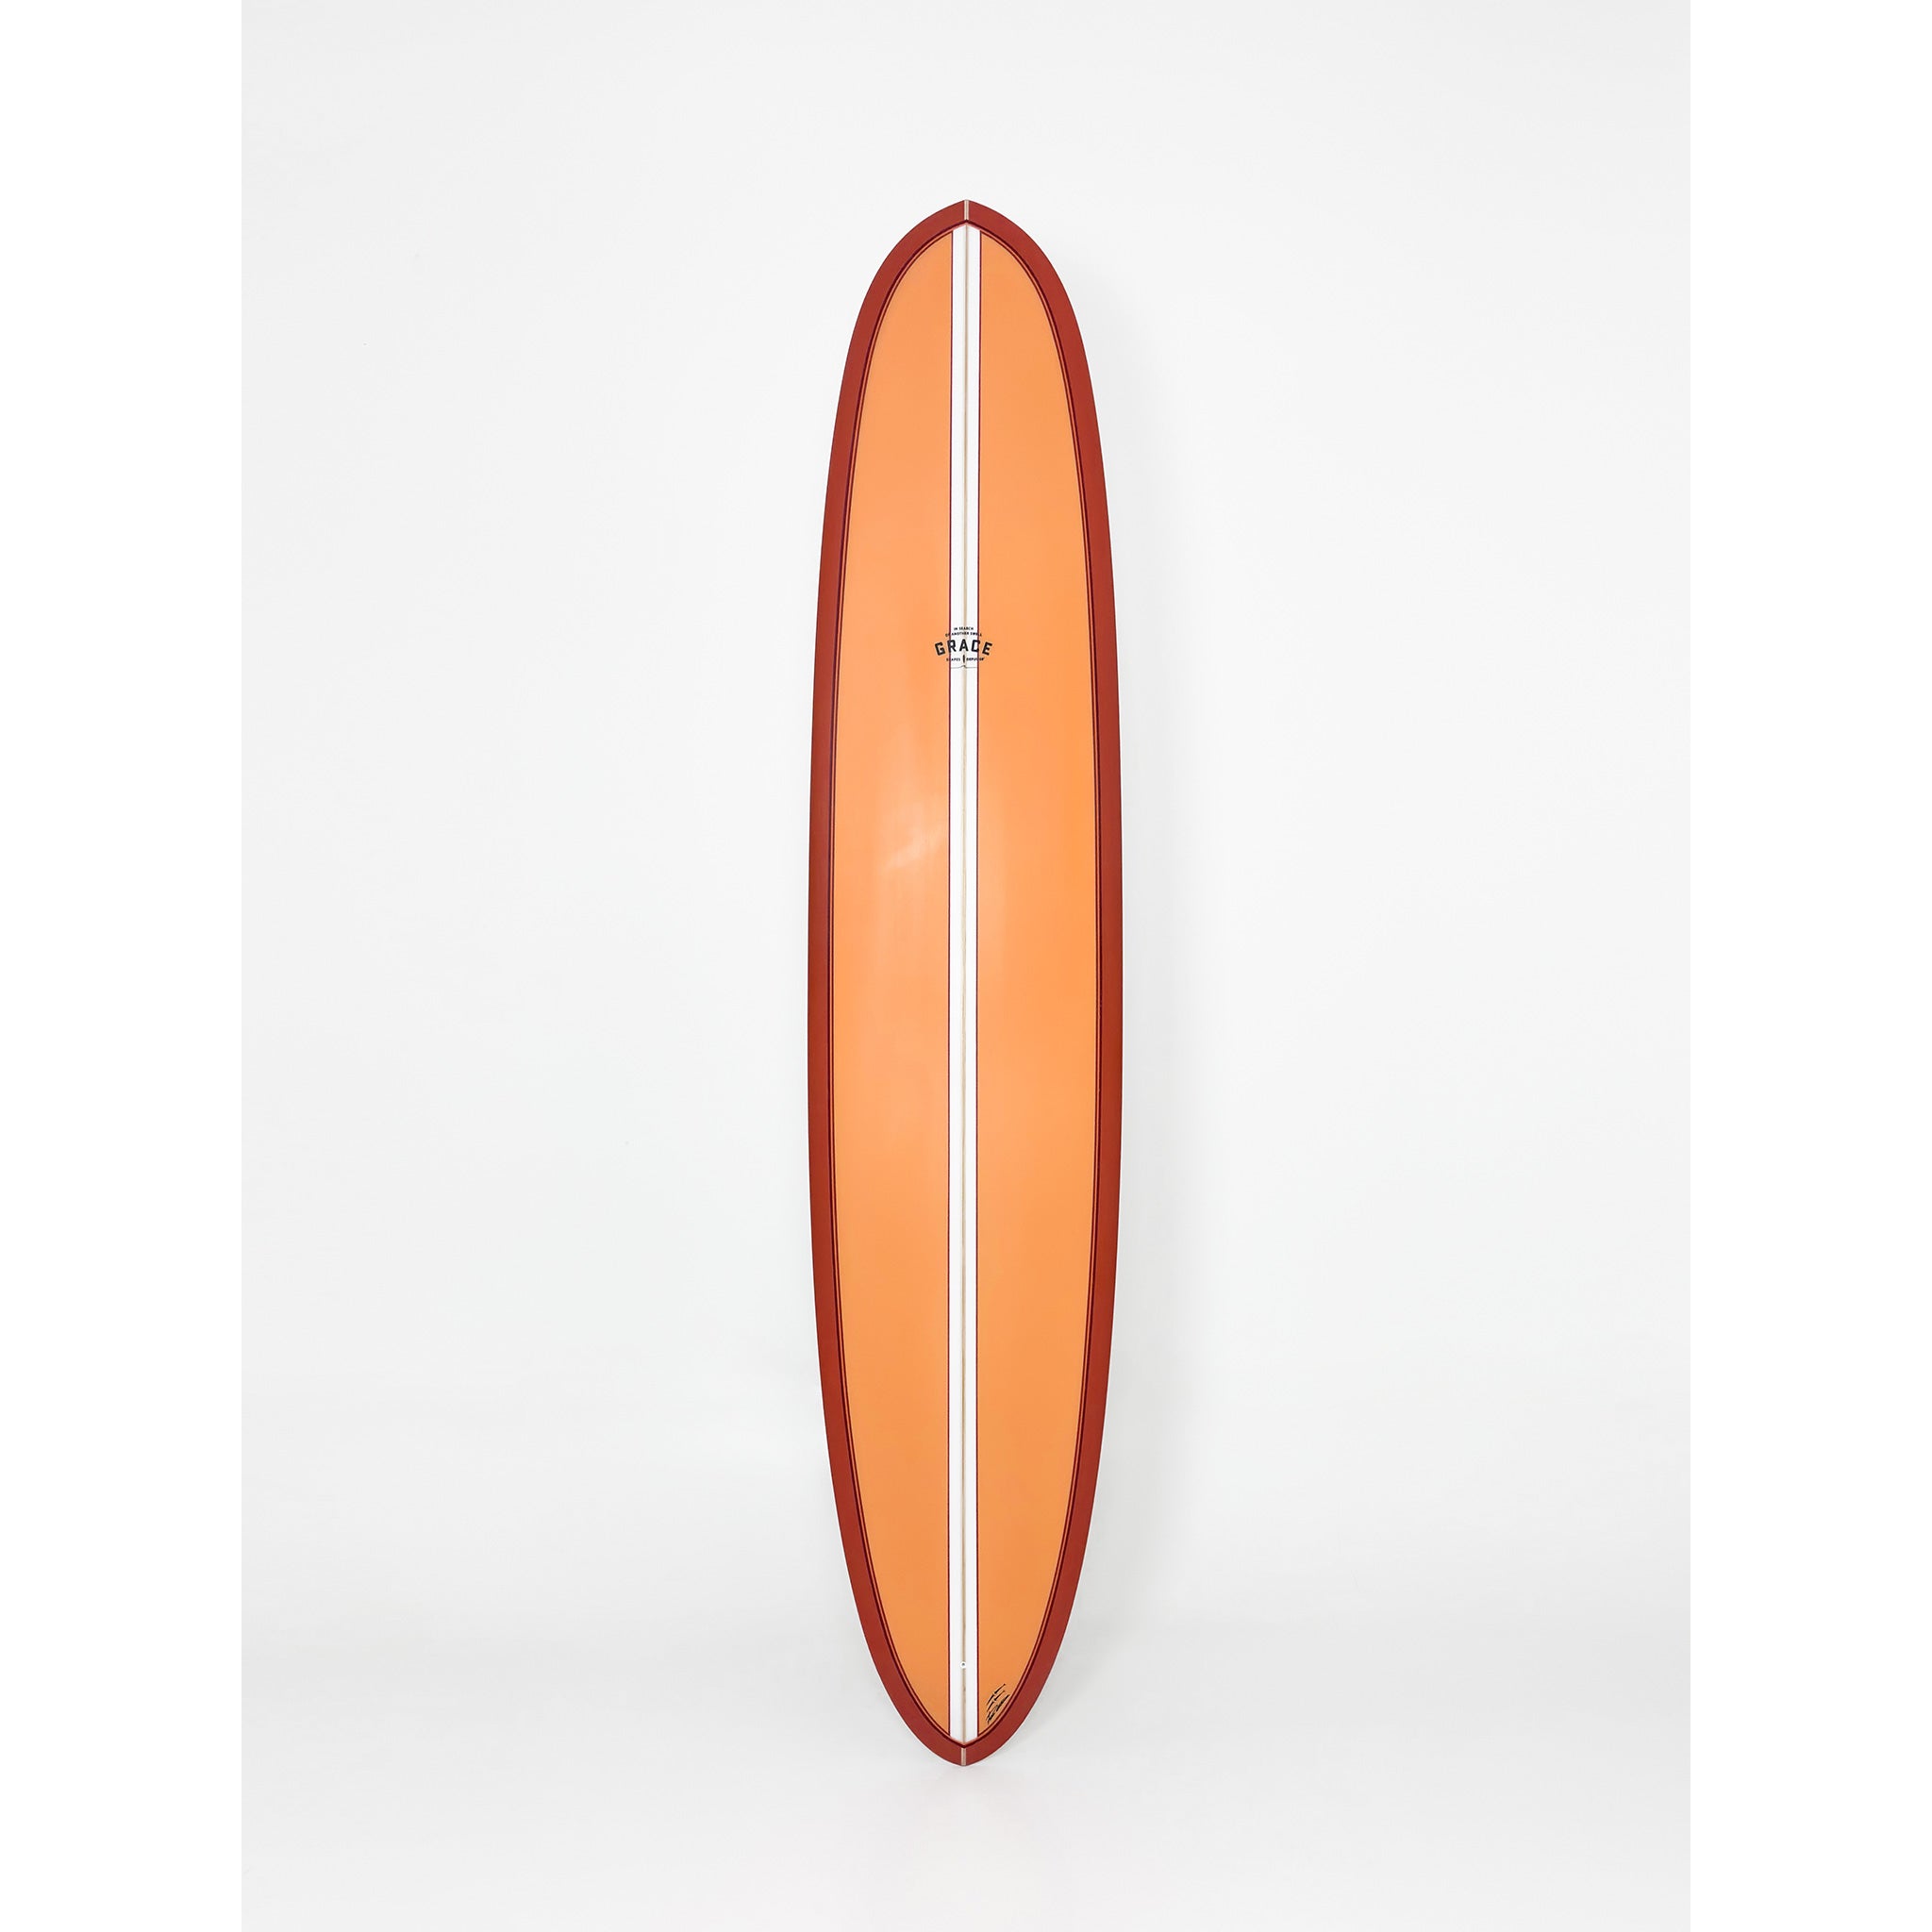 Phil Grace Surfboard Logstar 9'2 x 23 x 3 x 72.1L - LGB029